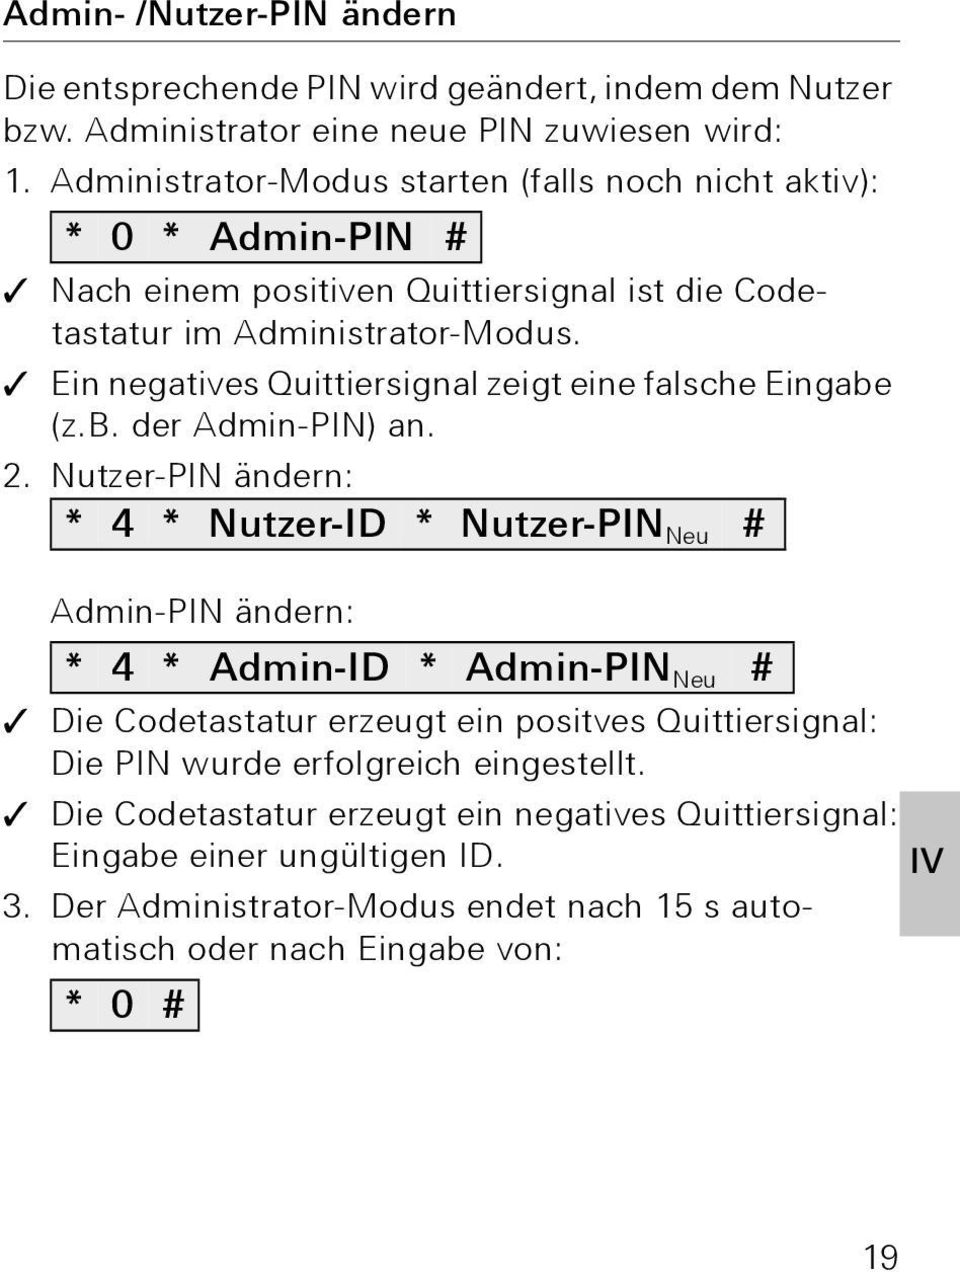 Ein negatives Quittiersignal zeigt eine falsche Eingabe (z.b. der Admin-PIN) an.